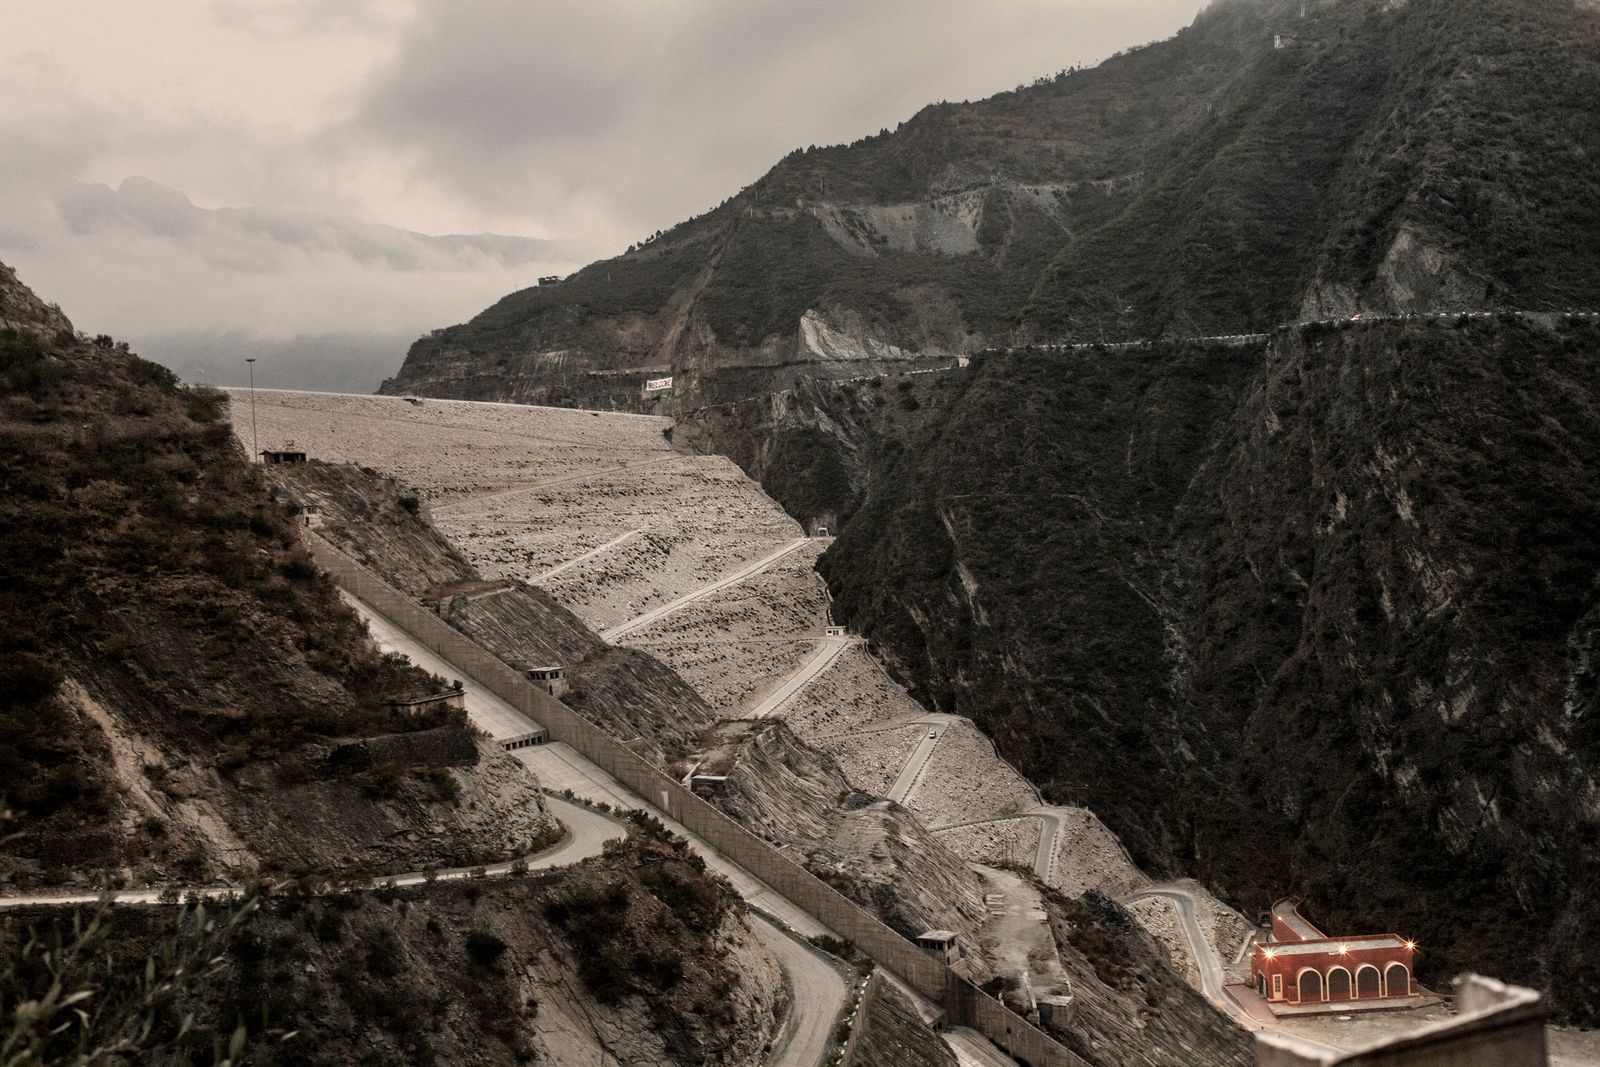 © Giulio Di Sturco - The Tehri dam, one of the most impressive dams in all of Asia.